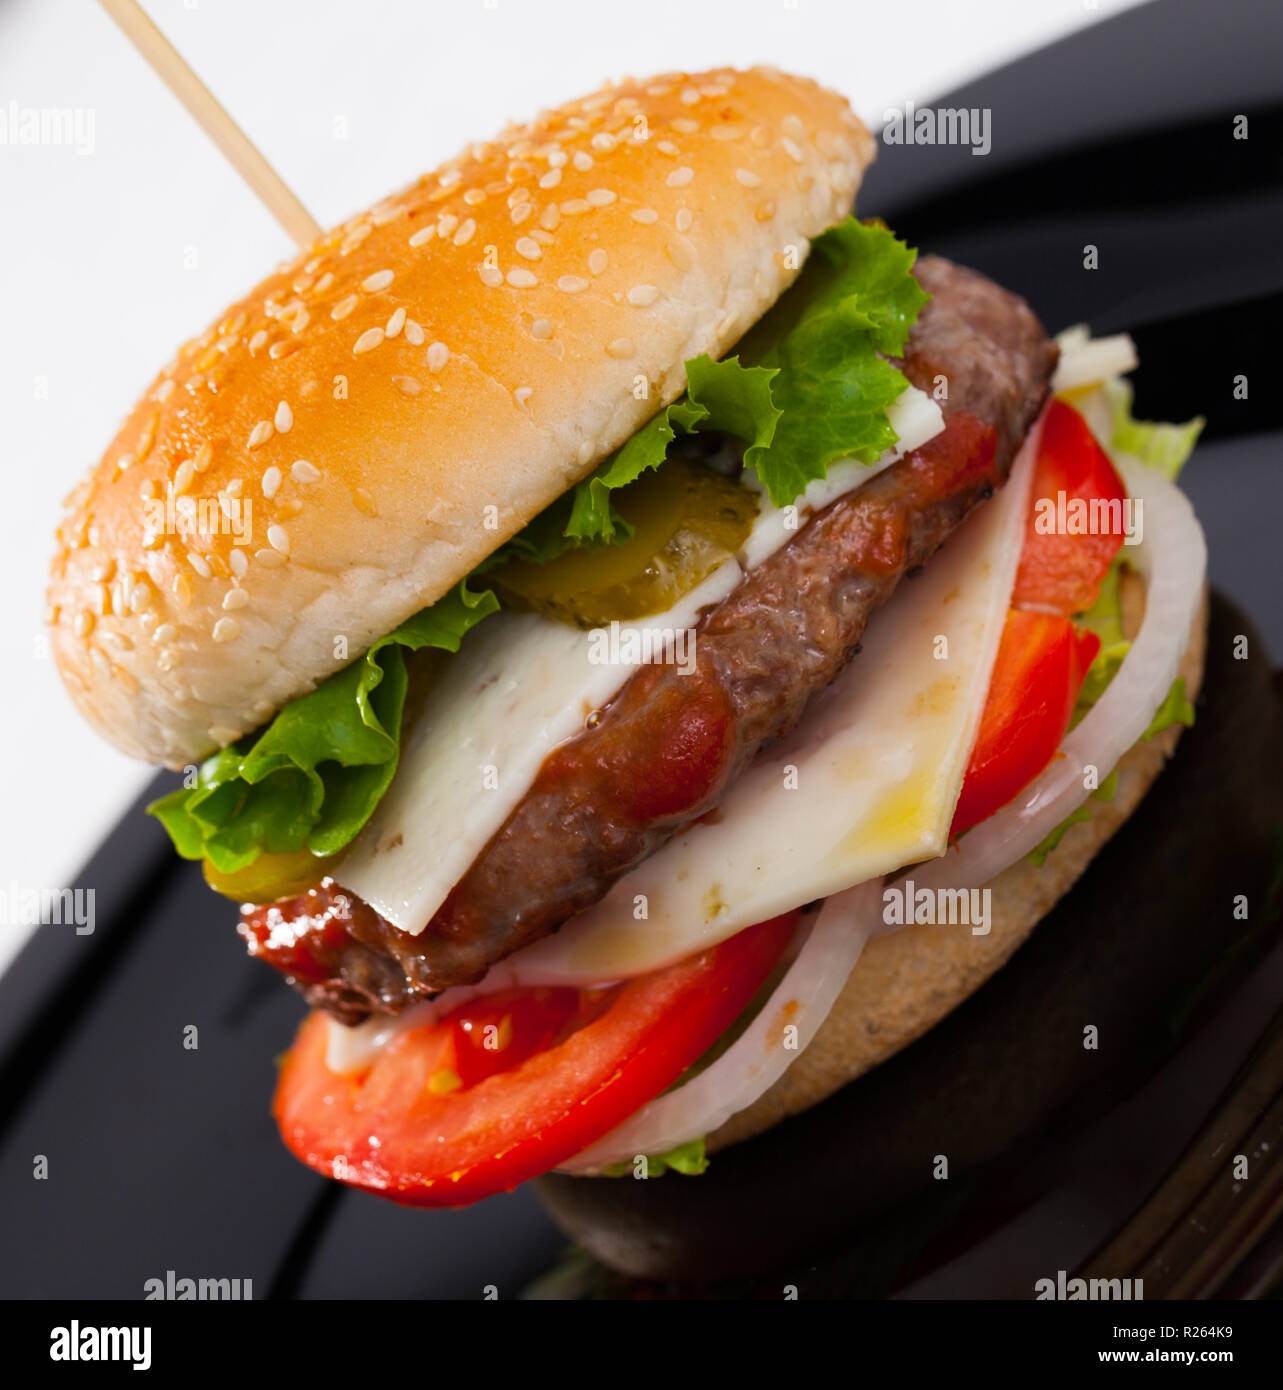 La hamburguesa es sabroso en la placa en la cocina del restaurante. La fotografía de la placa con una sabrosa hamburguesa en el restaurante. Foto de stock